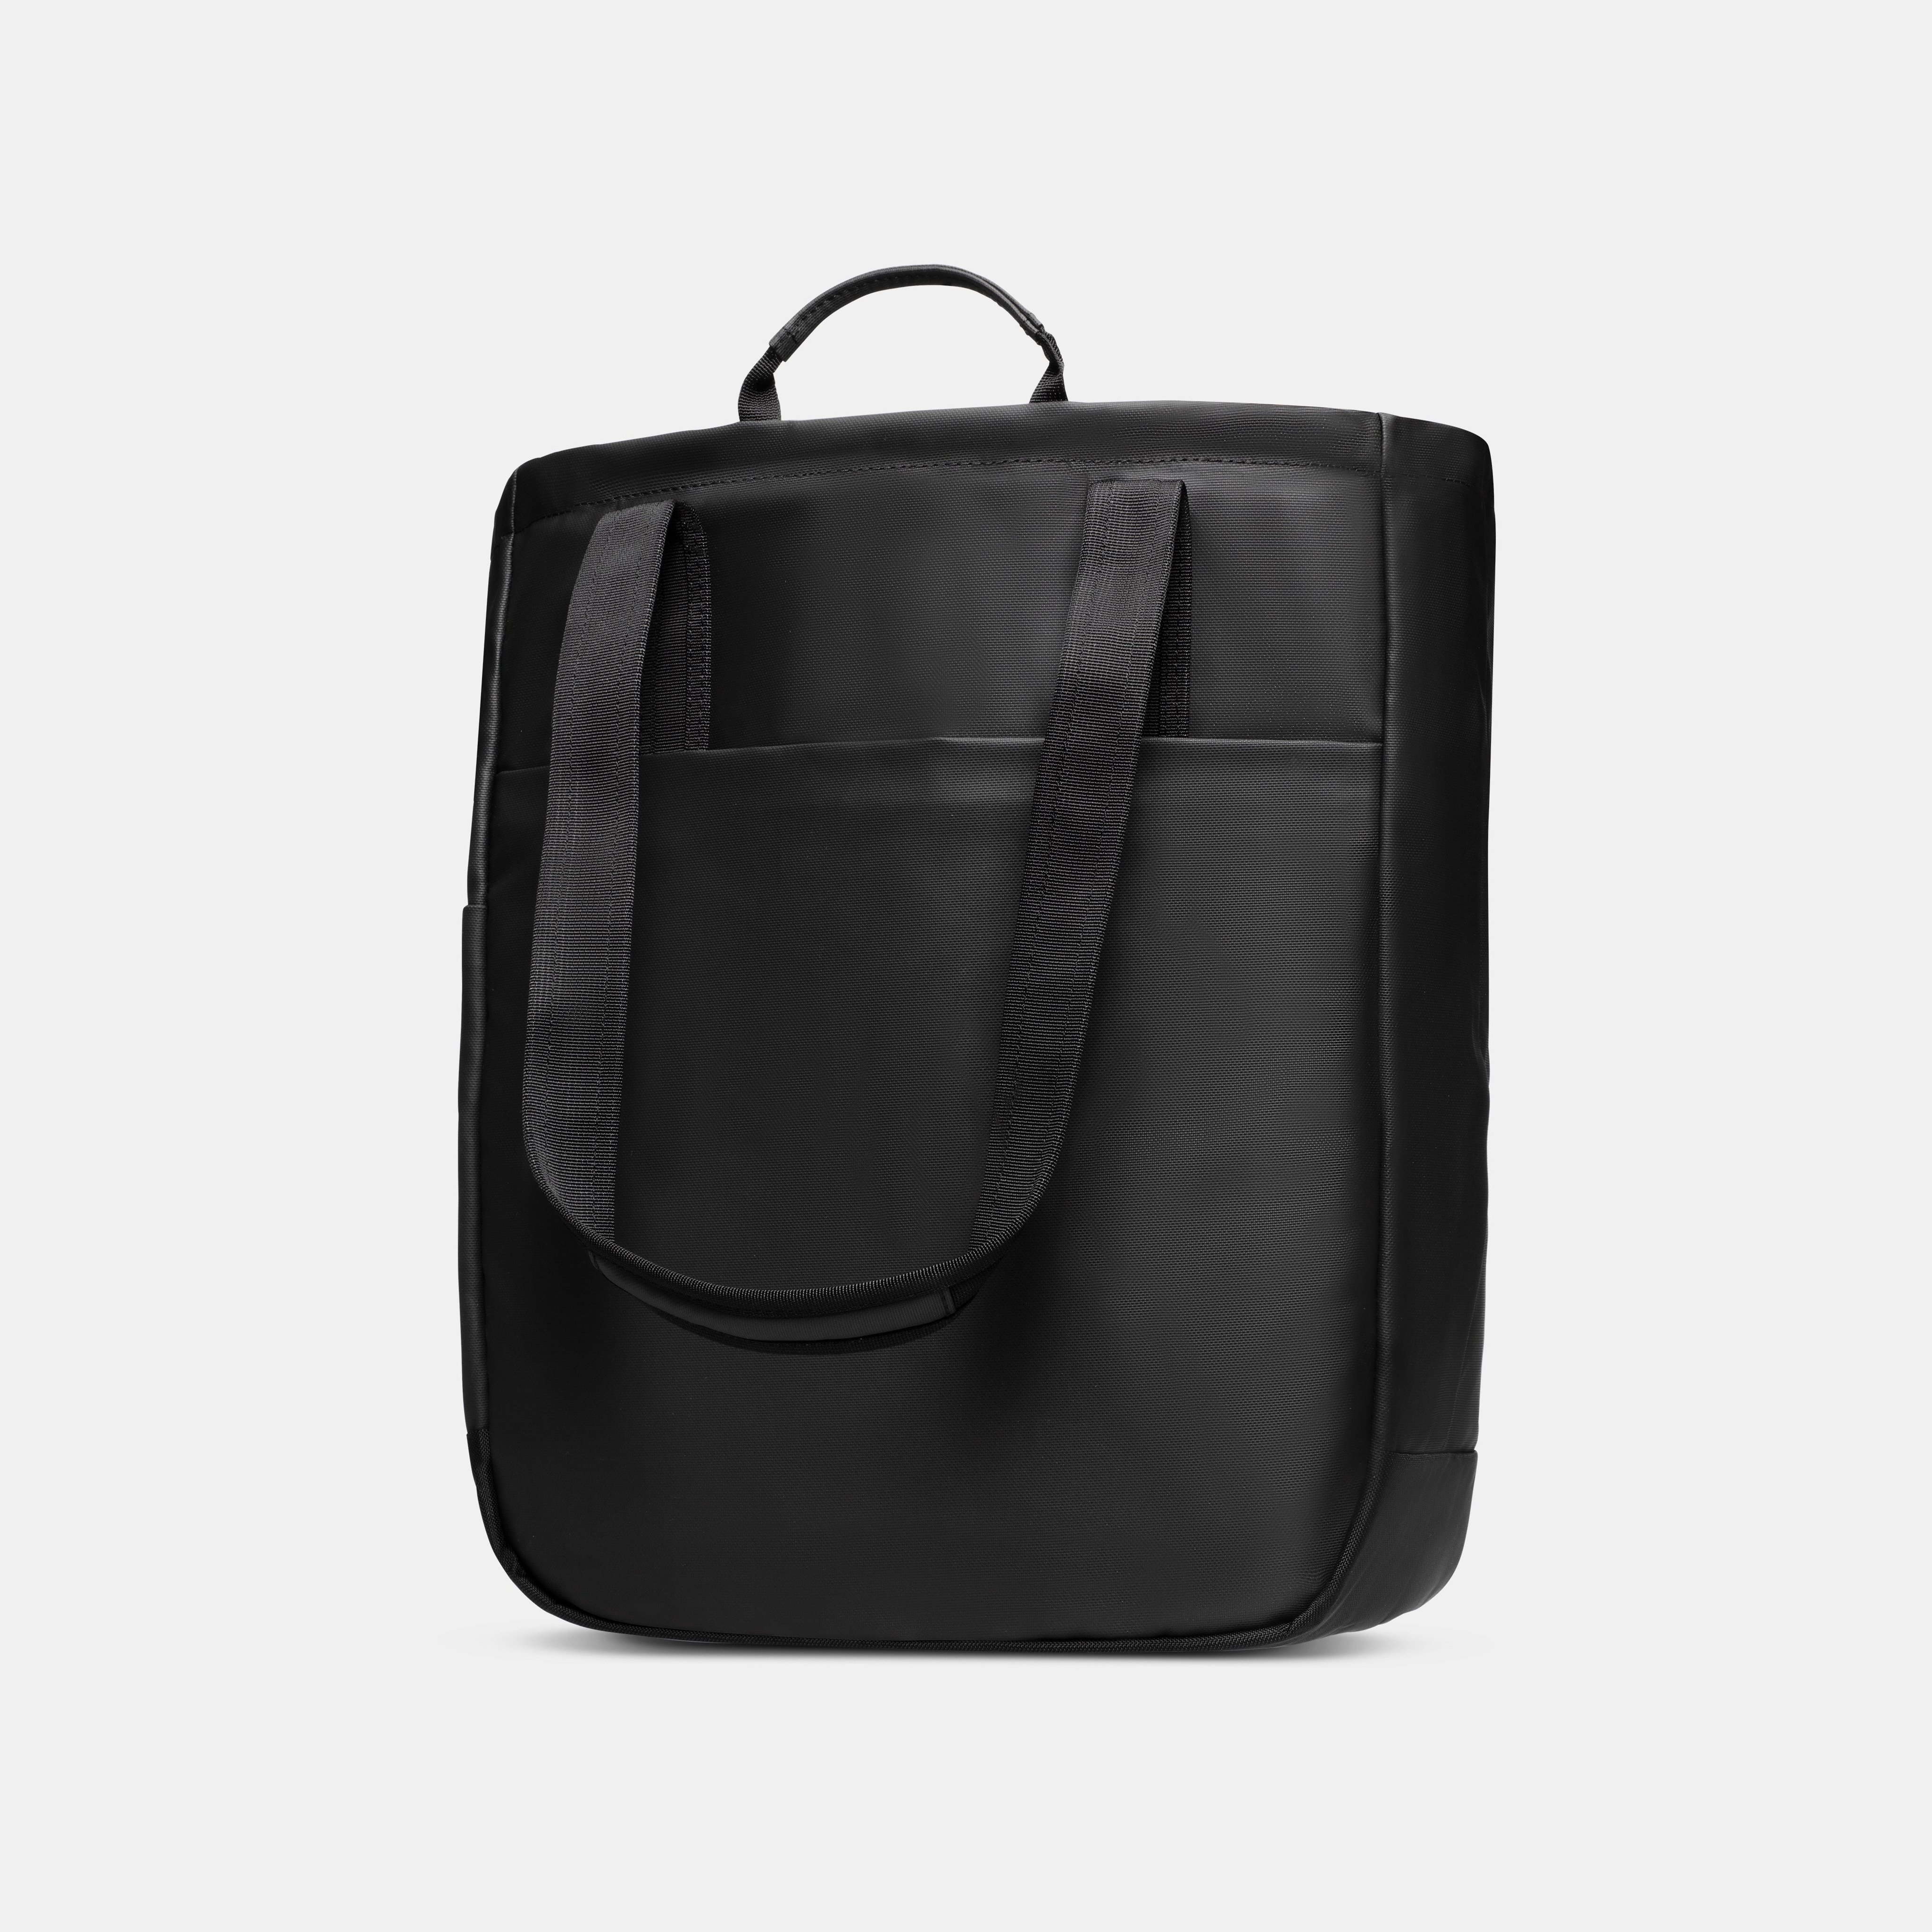 Seon Tote Bag product image